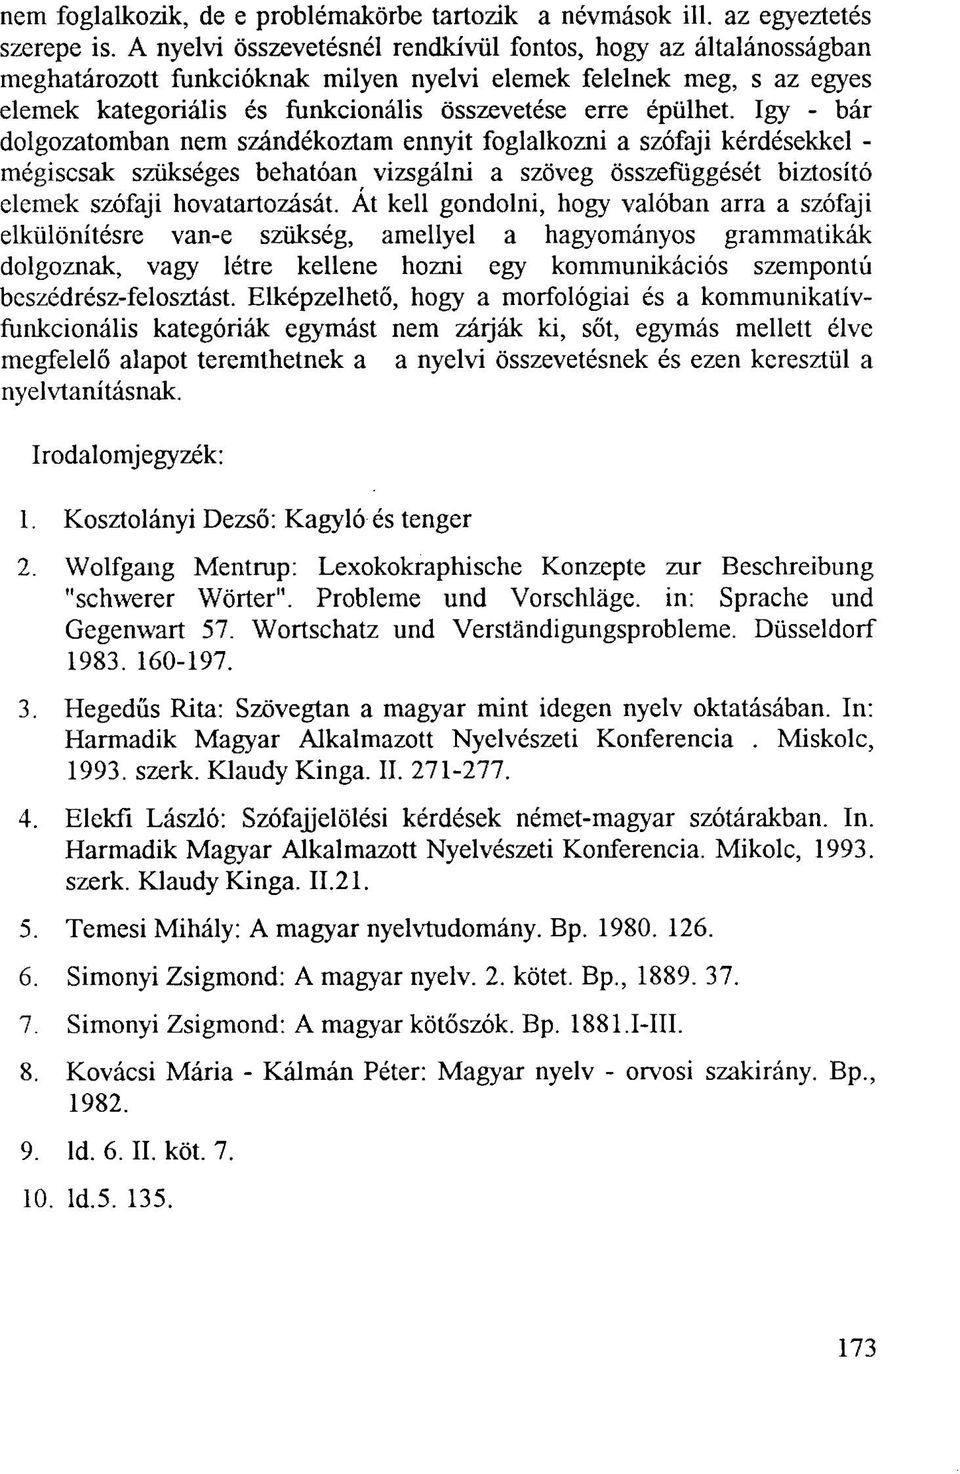 Hegedűs Rita Kötő- és módósítóelemek grammatikája és szemantikája - PDF  Free Download